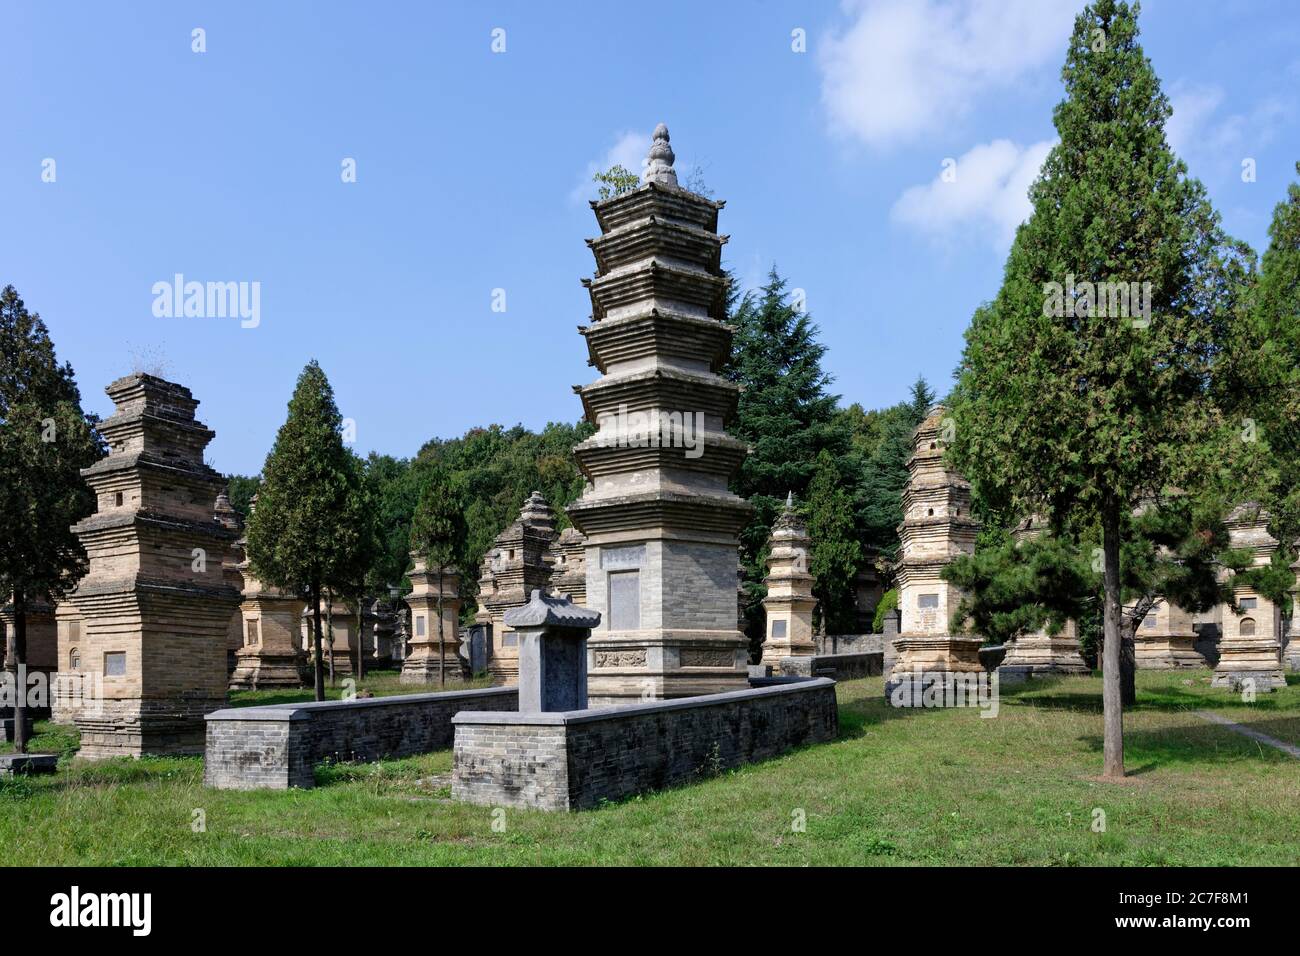 Shaolin monastery, burial site, pagoda forest, Shaolinsi, Zhengzhou, Henan Sheng, China Stock Photo